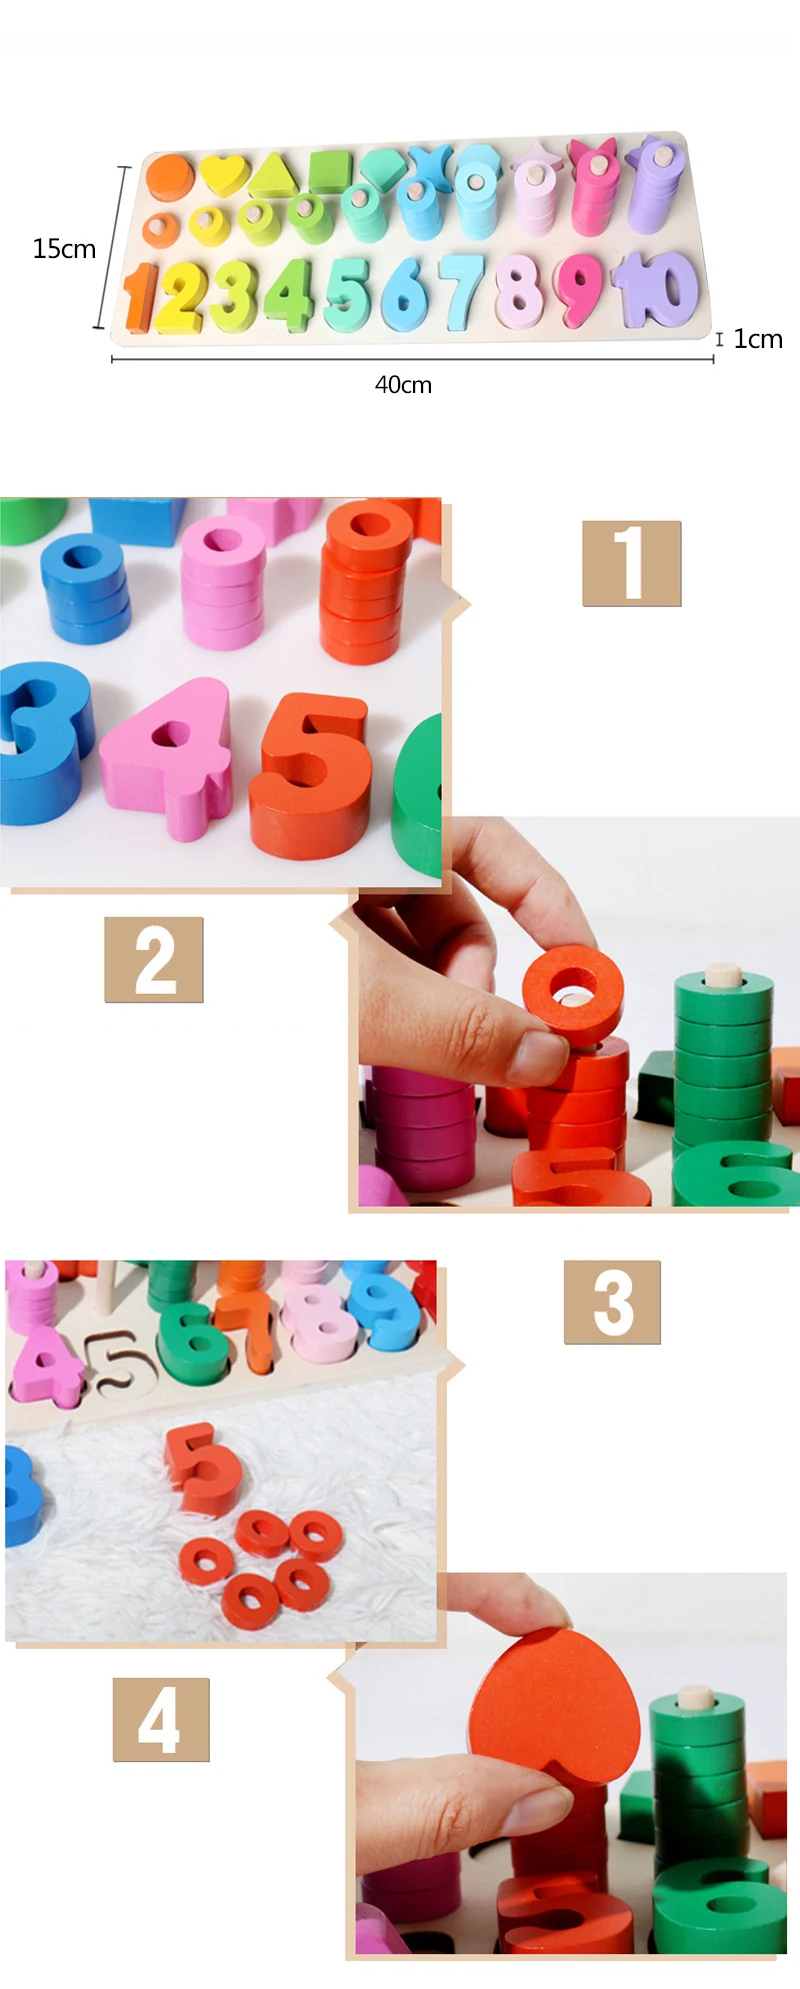 Быстро раскупаемый 1 комплект деревянный Монтессори игрушки подсчета геометрический Форма познания матч раннее развитие ребенка учебных пособий математические игрушки D132